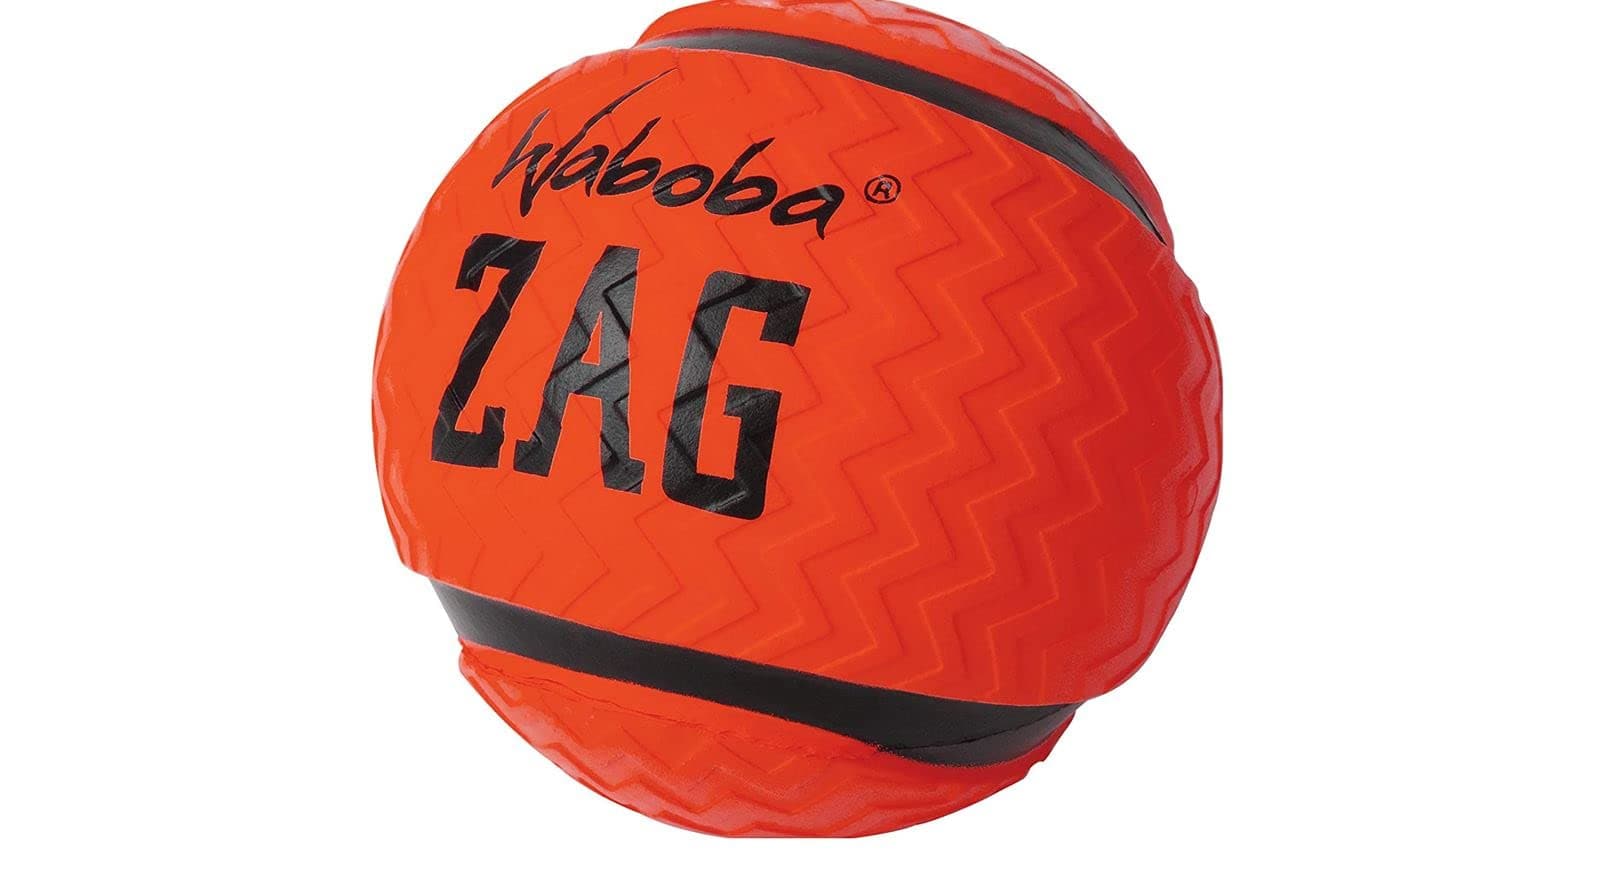 Sport In Life Waboba JOWAZAGBO-00000 Zag Ball, Orange